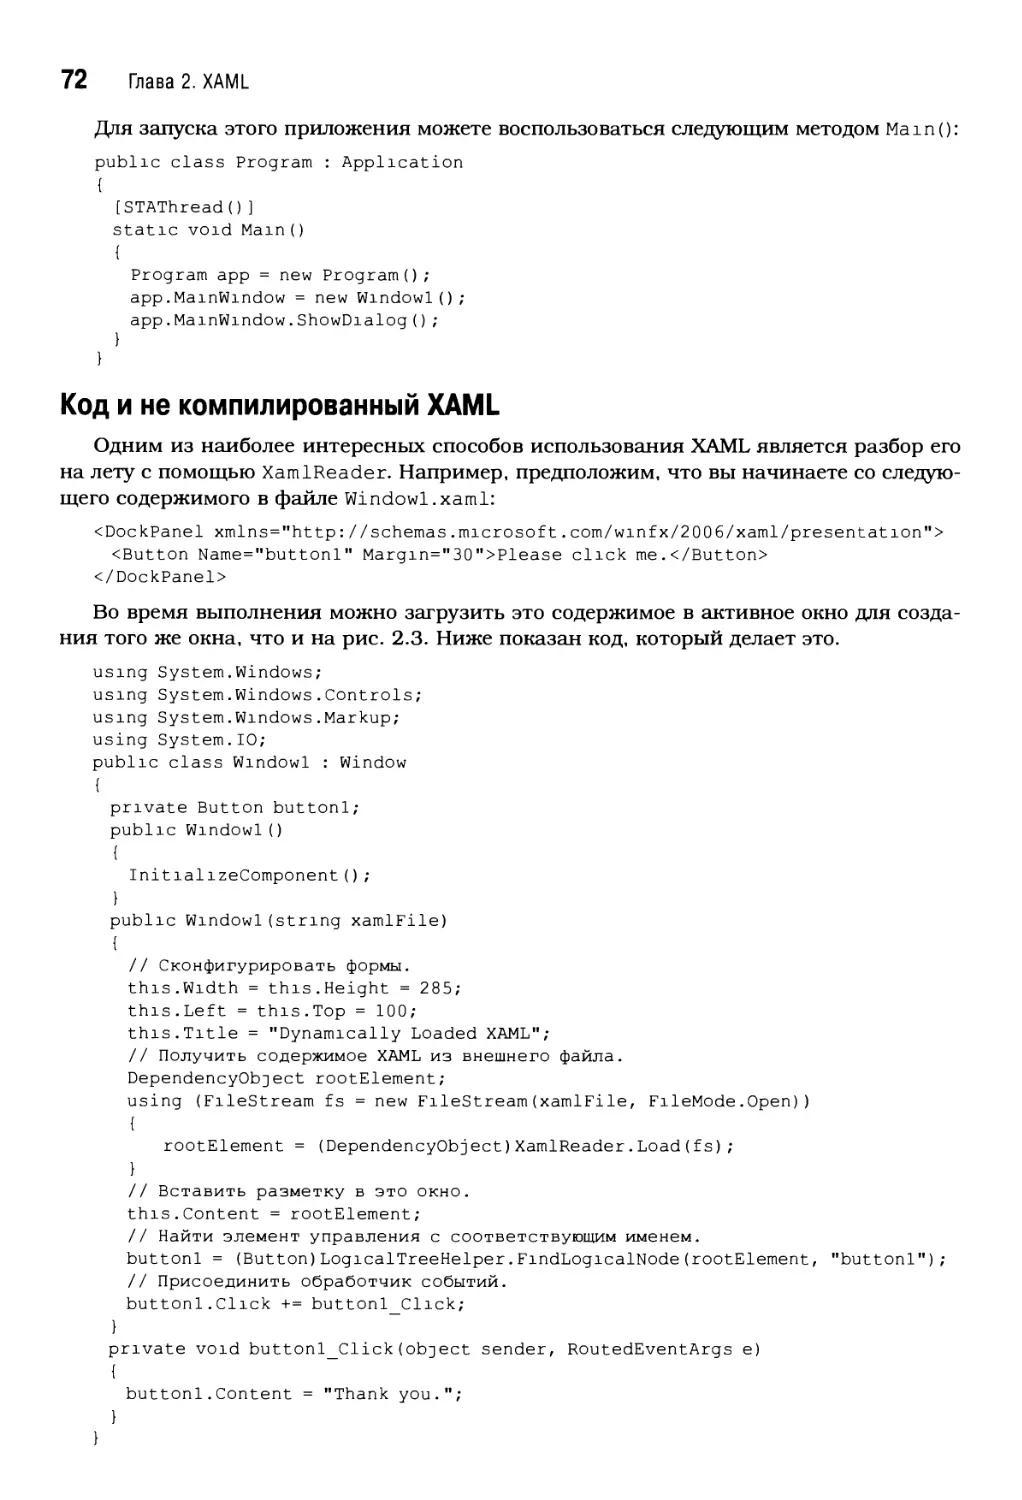 Код и не компилированный XAML